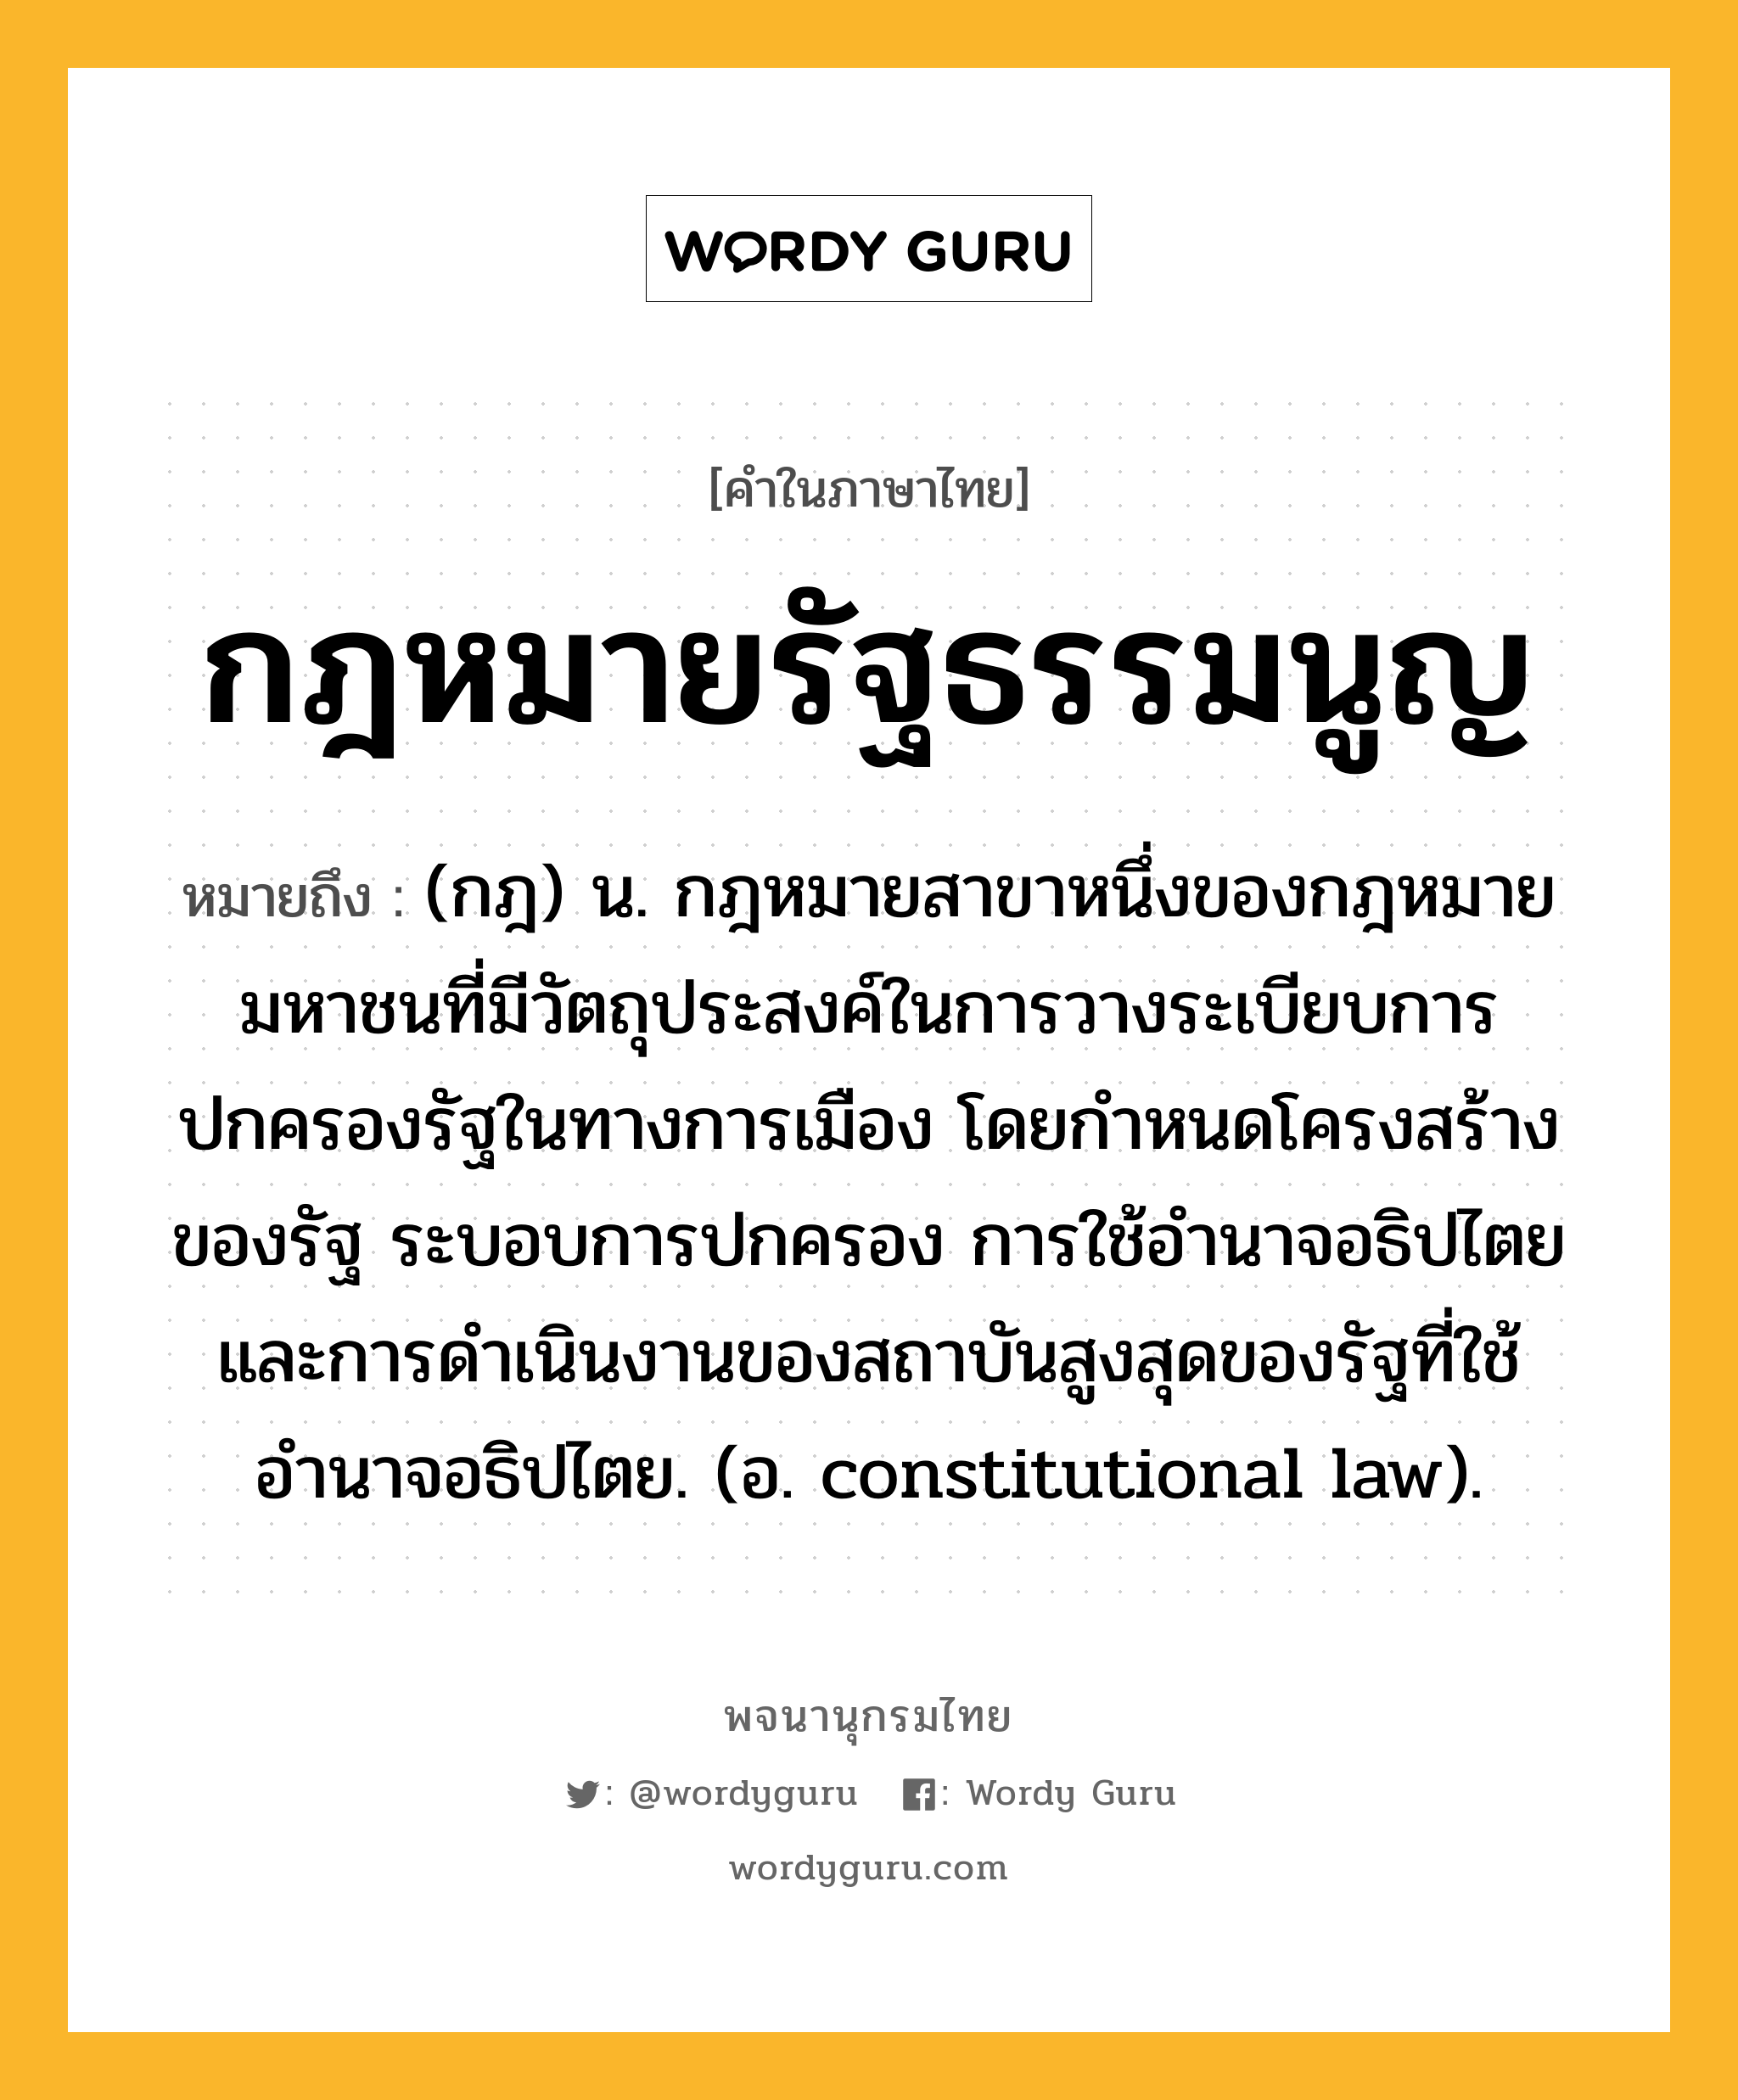 กฎหมายรัฐธรรมนูญ ความหมาย หมายถึงอะไร?, คำในภาษาไทย กฎหมายรัฐธรรมนูญ หมายถึง (กฎ) น. กฎหมายสาขาหนึ่งของกฎหมายมหาชนที่มีวัตถุประสงค์ในการวางระเบียบการปกครองรัฐในทางการเมือง โดยกำหนดโครงสร้างของรัฐ ระบอบการปกครอง การใช้อำนาจอธิปไตยและการดำเนินงานของสถาบันสูงสุดของรัฐที่ใช้อำนาจอธิปไตย. (อ. constitutional law).